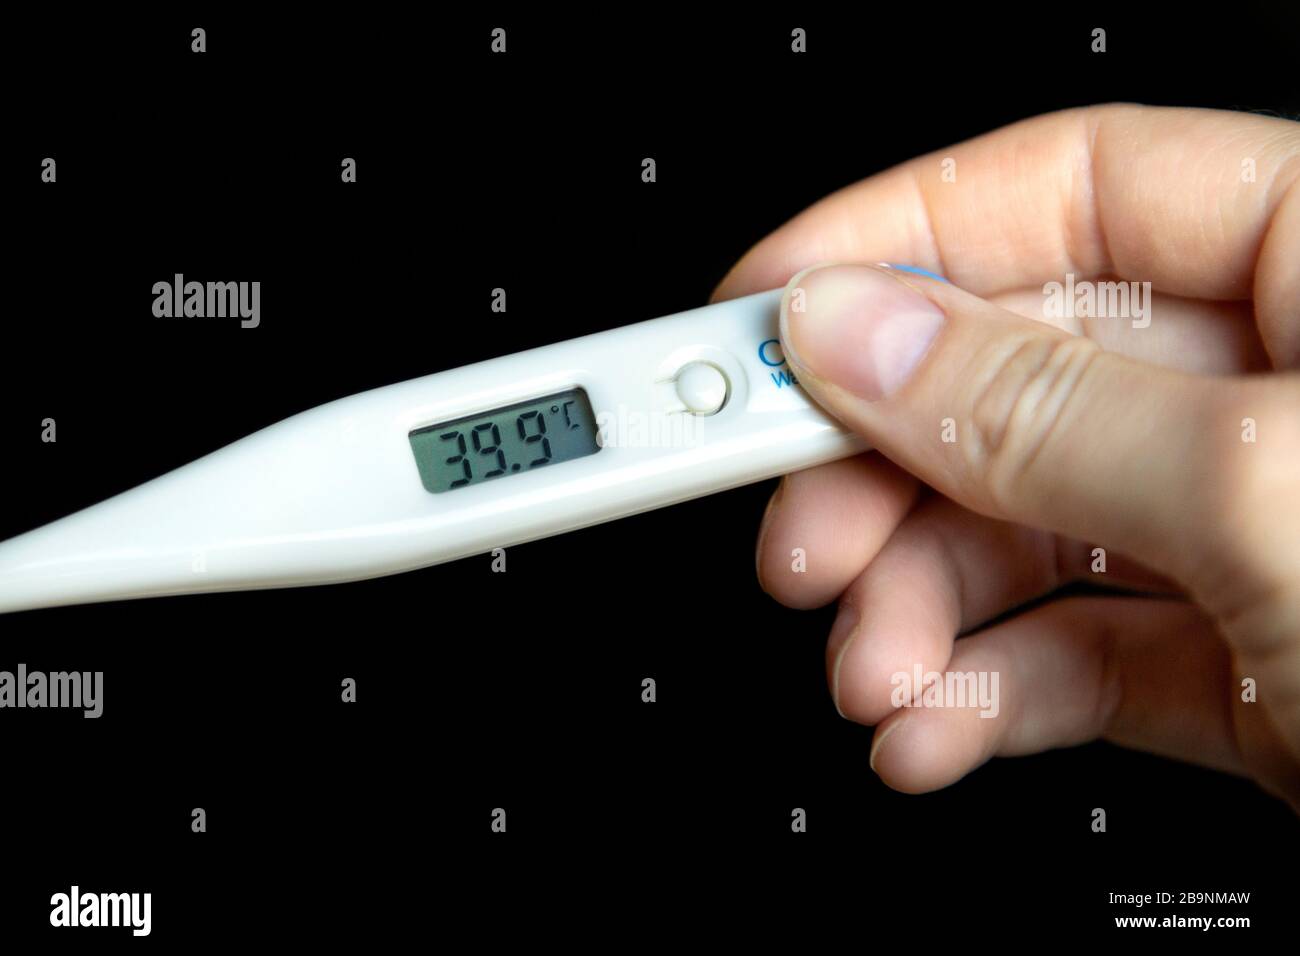 Mano sosteniendo un termómetro que muestra fiebre alta de 39.9 °C. Foto de stock